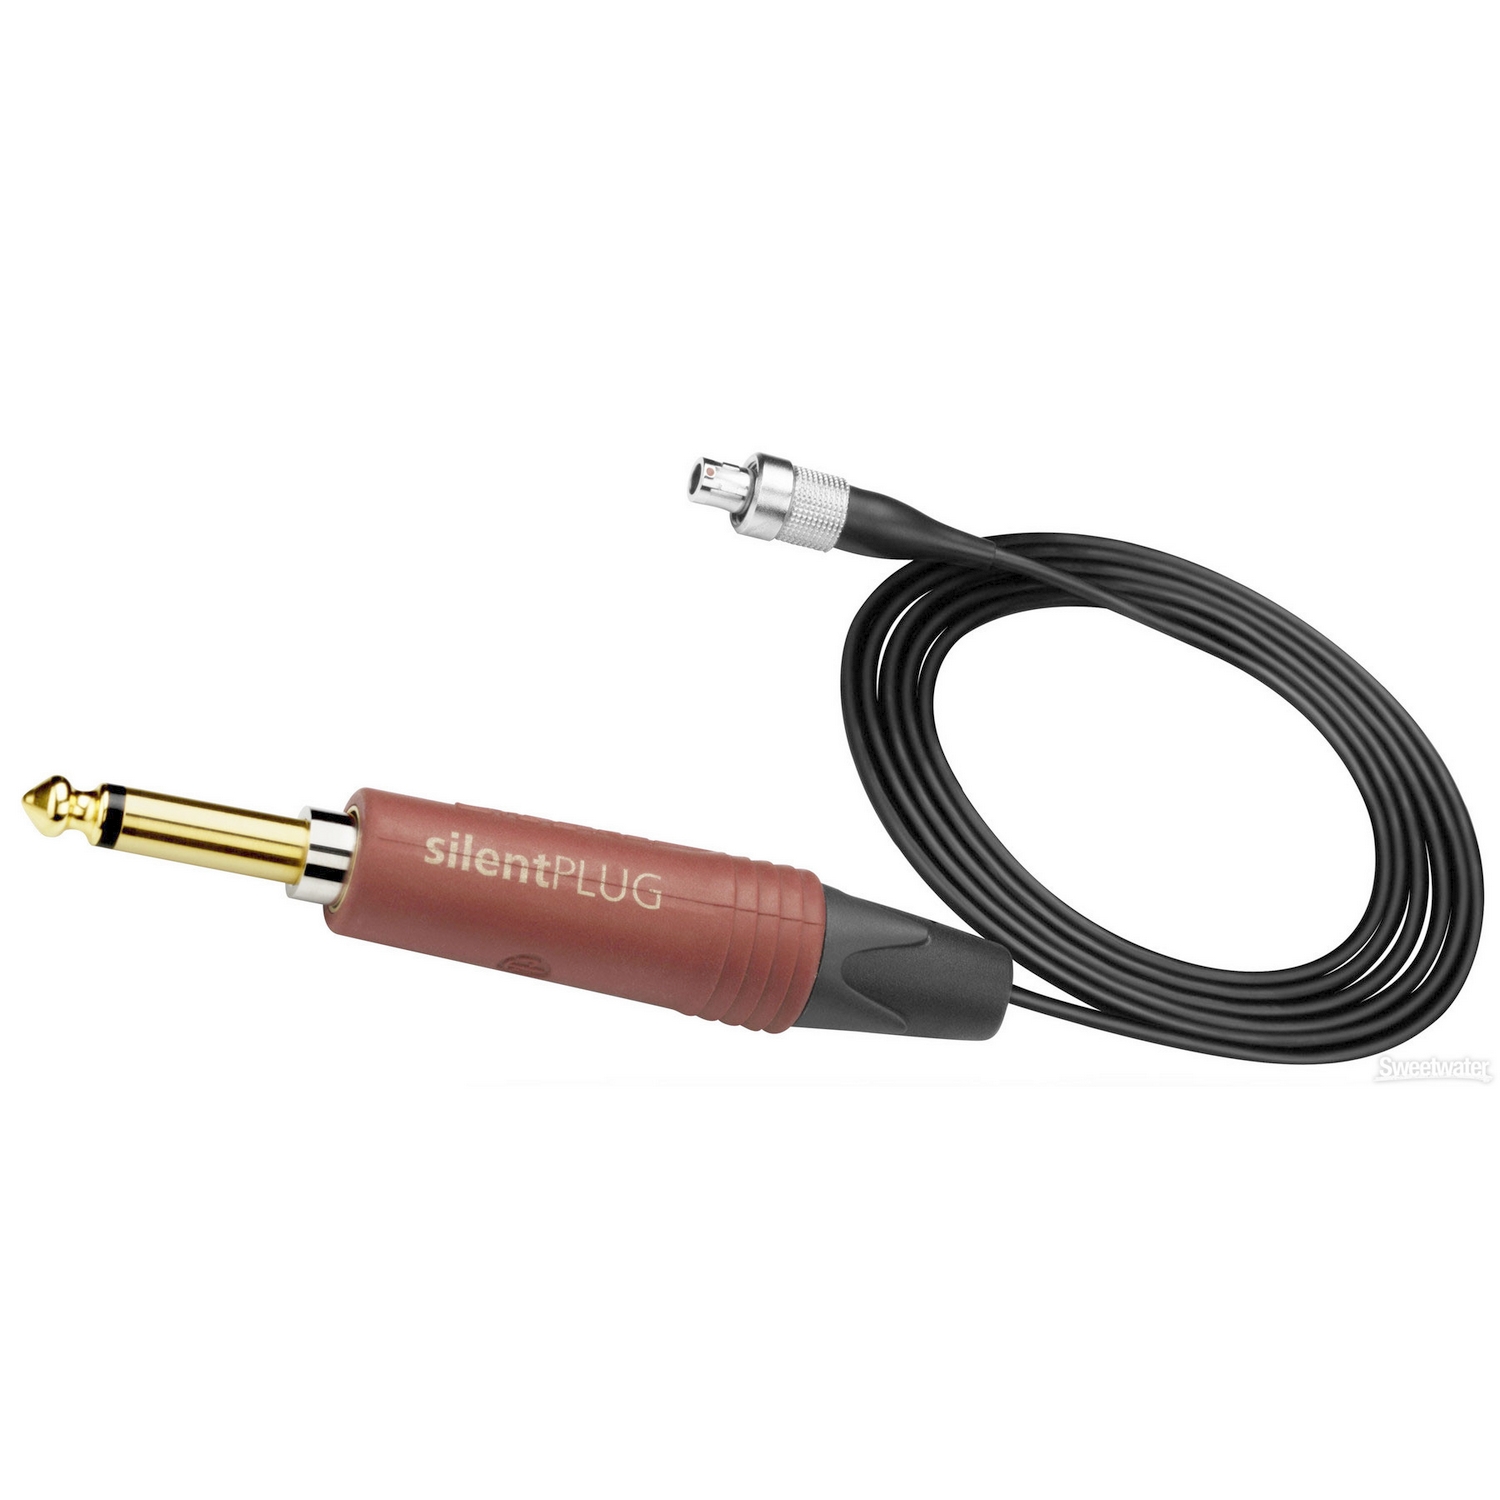 SENNHEISER CI 1-4 - гитарный кабель для миниатюрных передатчиков SK серии 2000 с разъёмами Neutrik